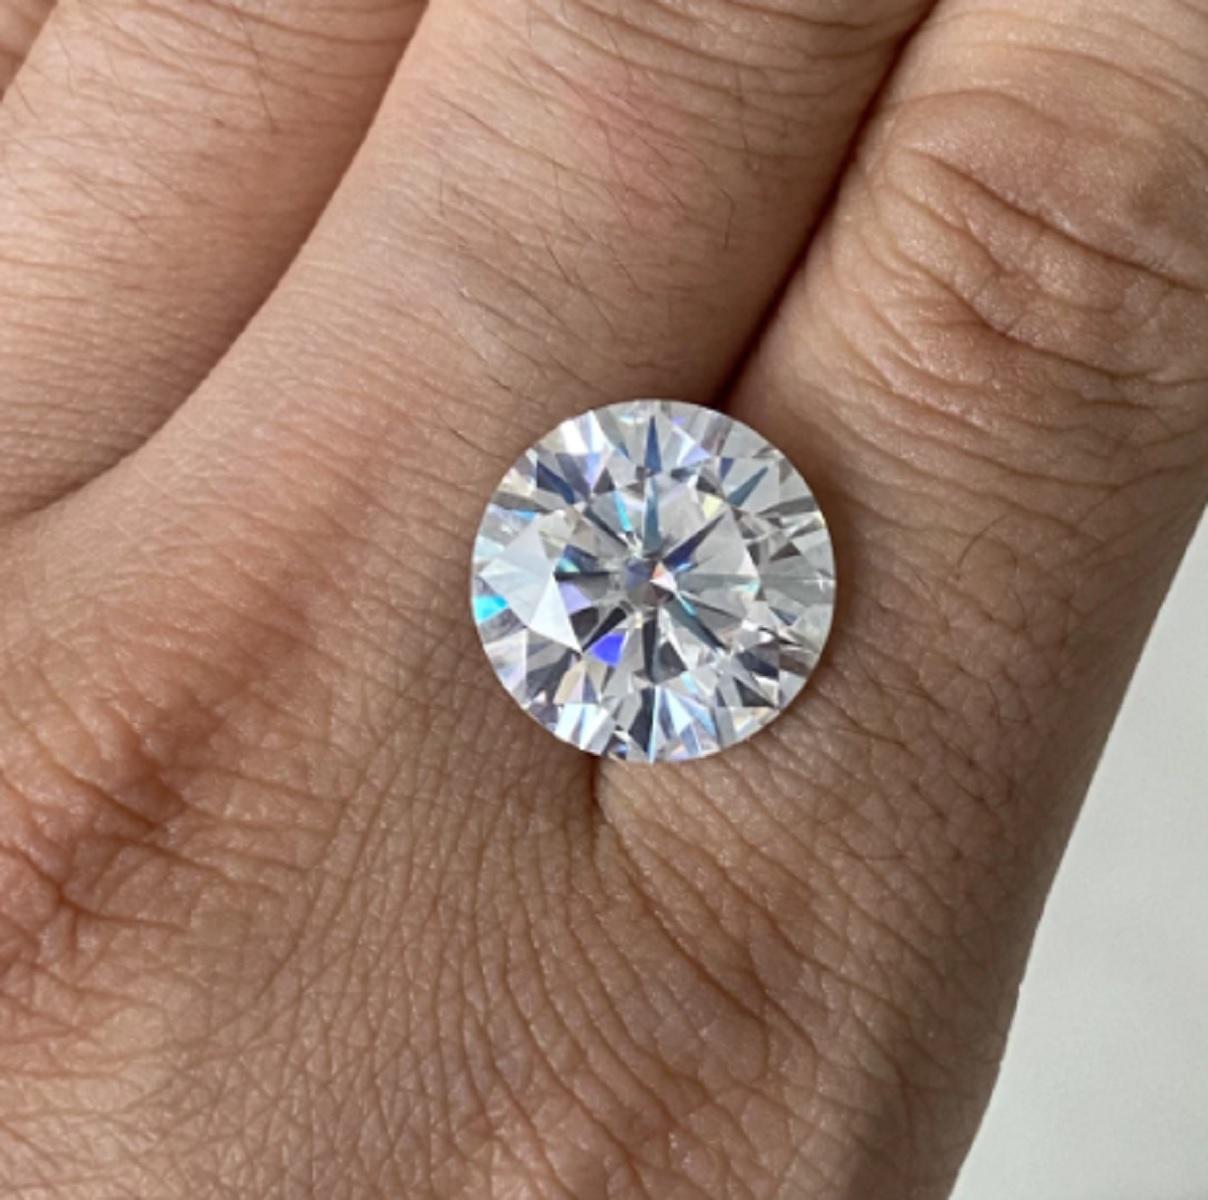 5 carat round diamond